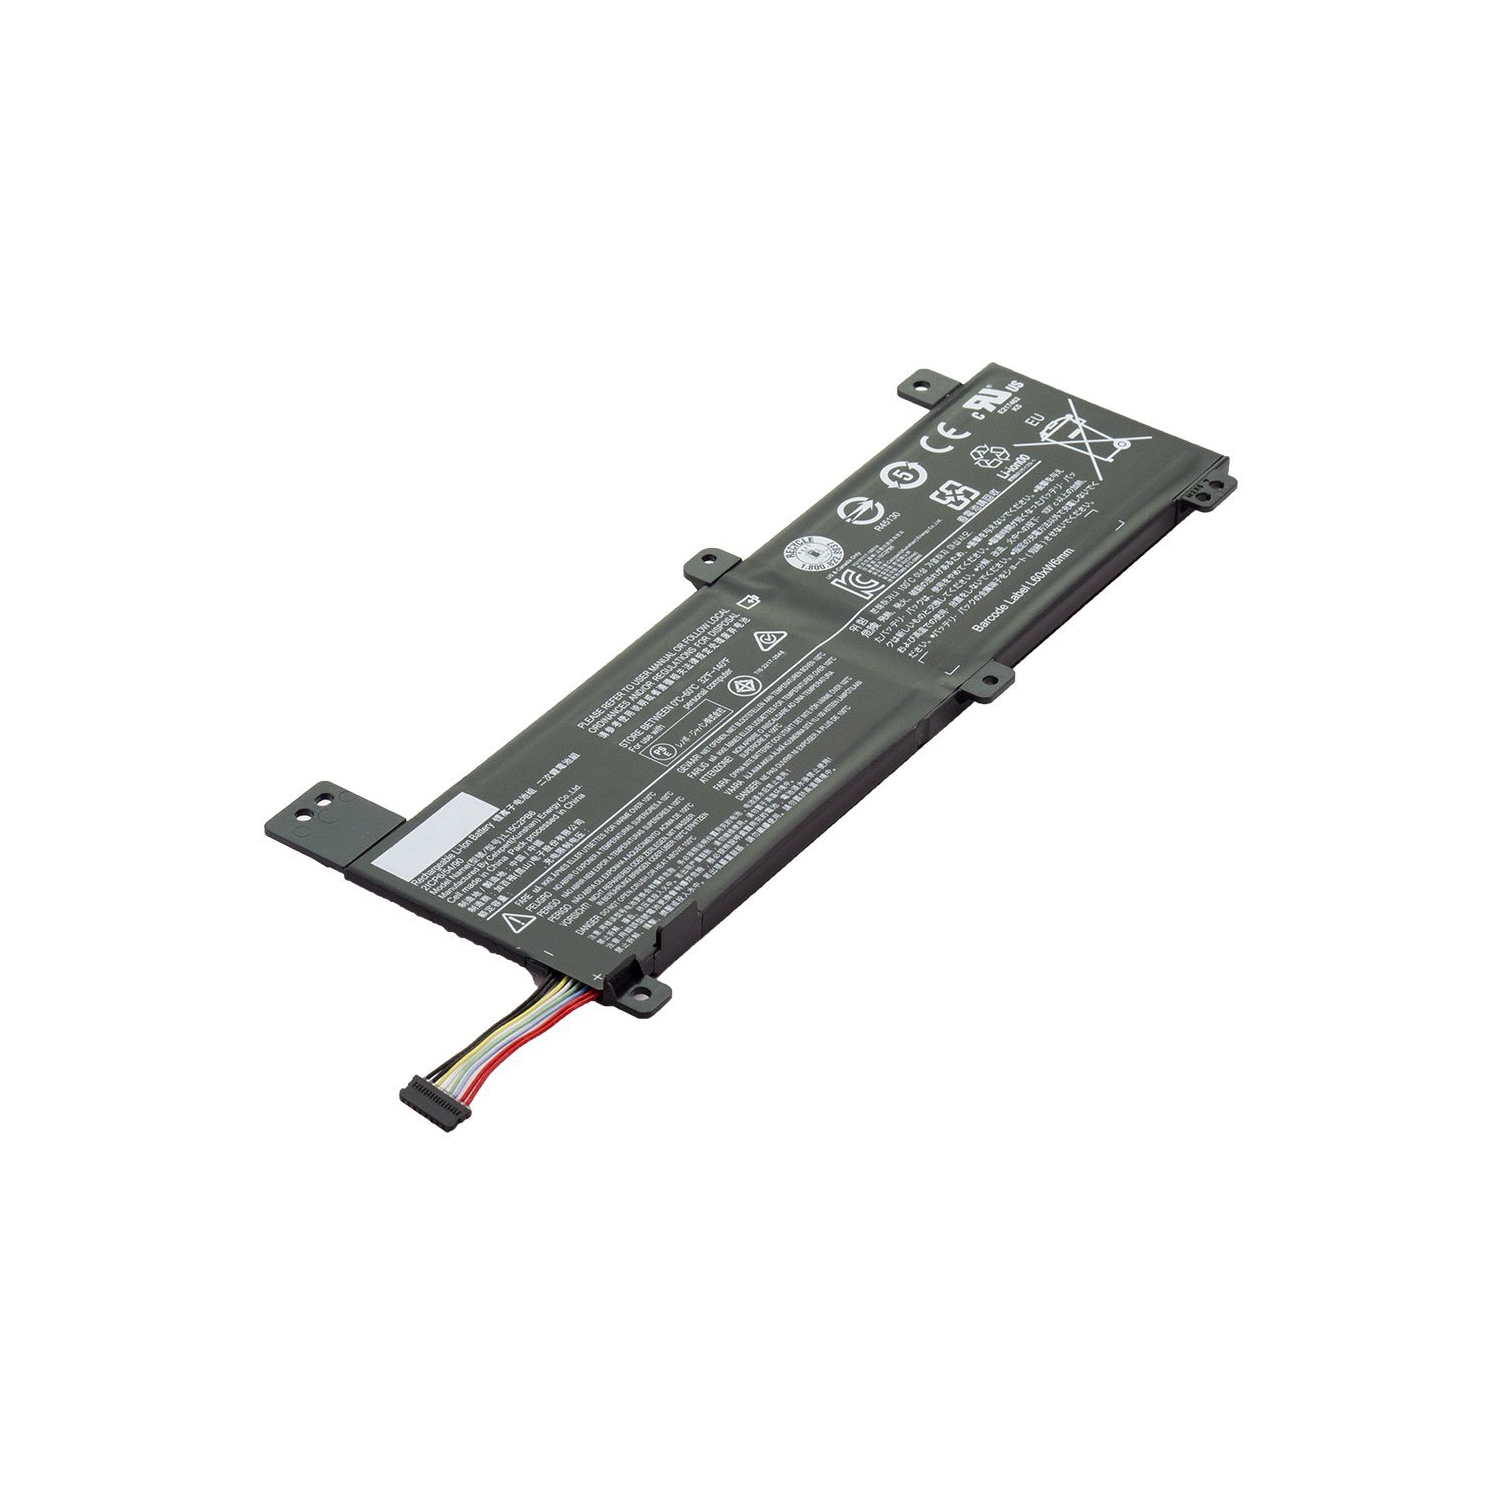 Laptop Battery Replacement for Lenovo IdeaPad 310 14ISK 80SL0039AX, IdeaPad 310 14ISK, L15C2PB6, L15L2PB2, L15M2PB4